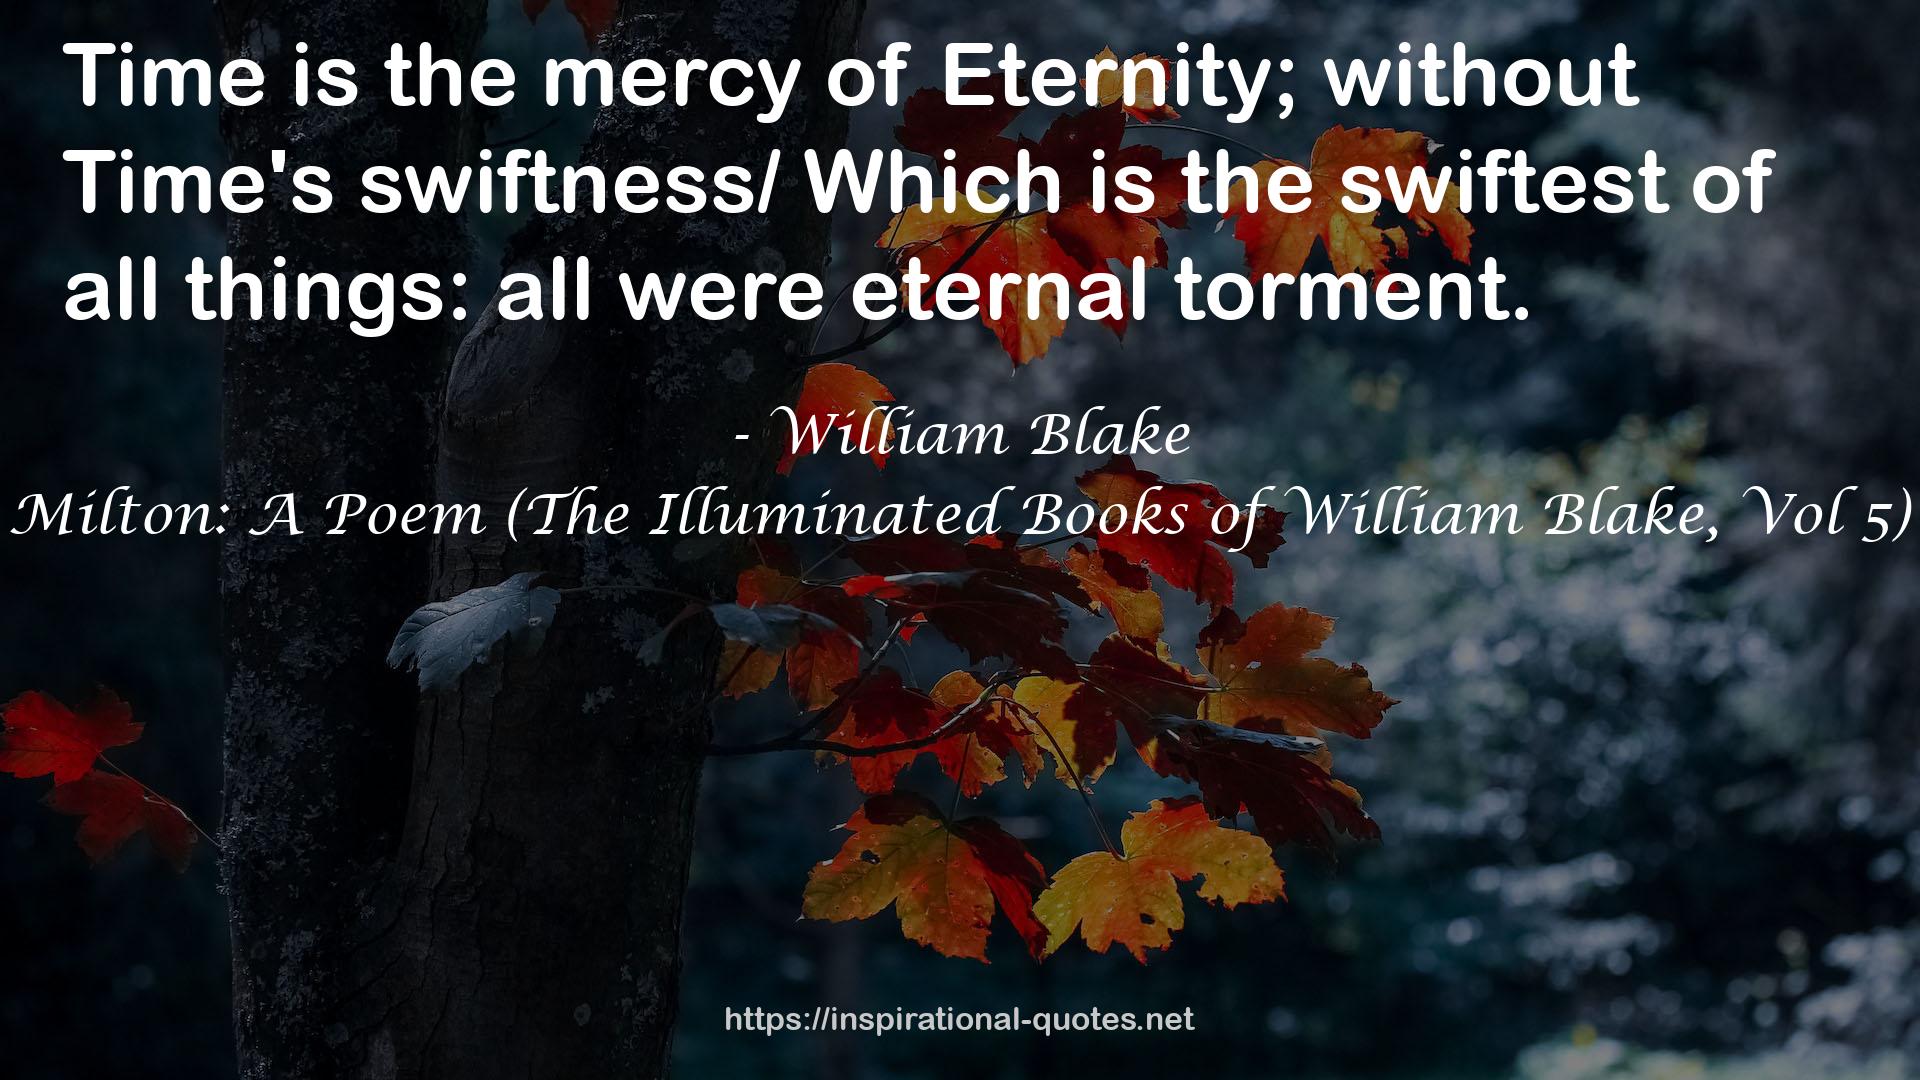 Milton: A Poem (The Illuminated Books of William Blake, Vol 5) QUOTES